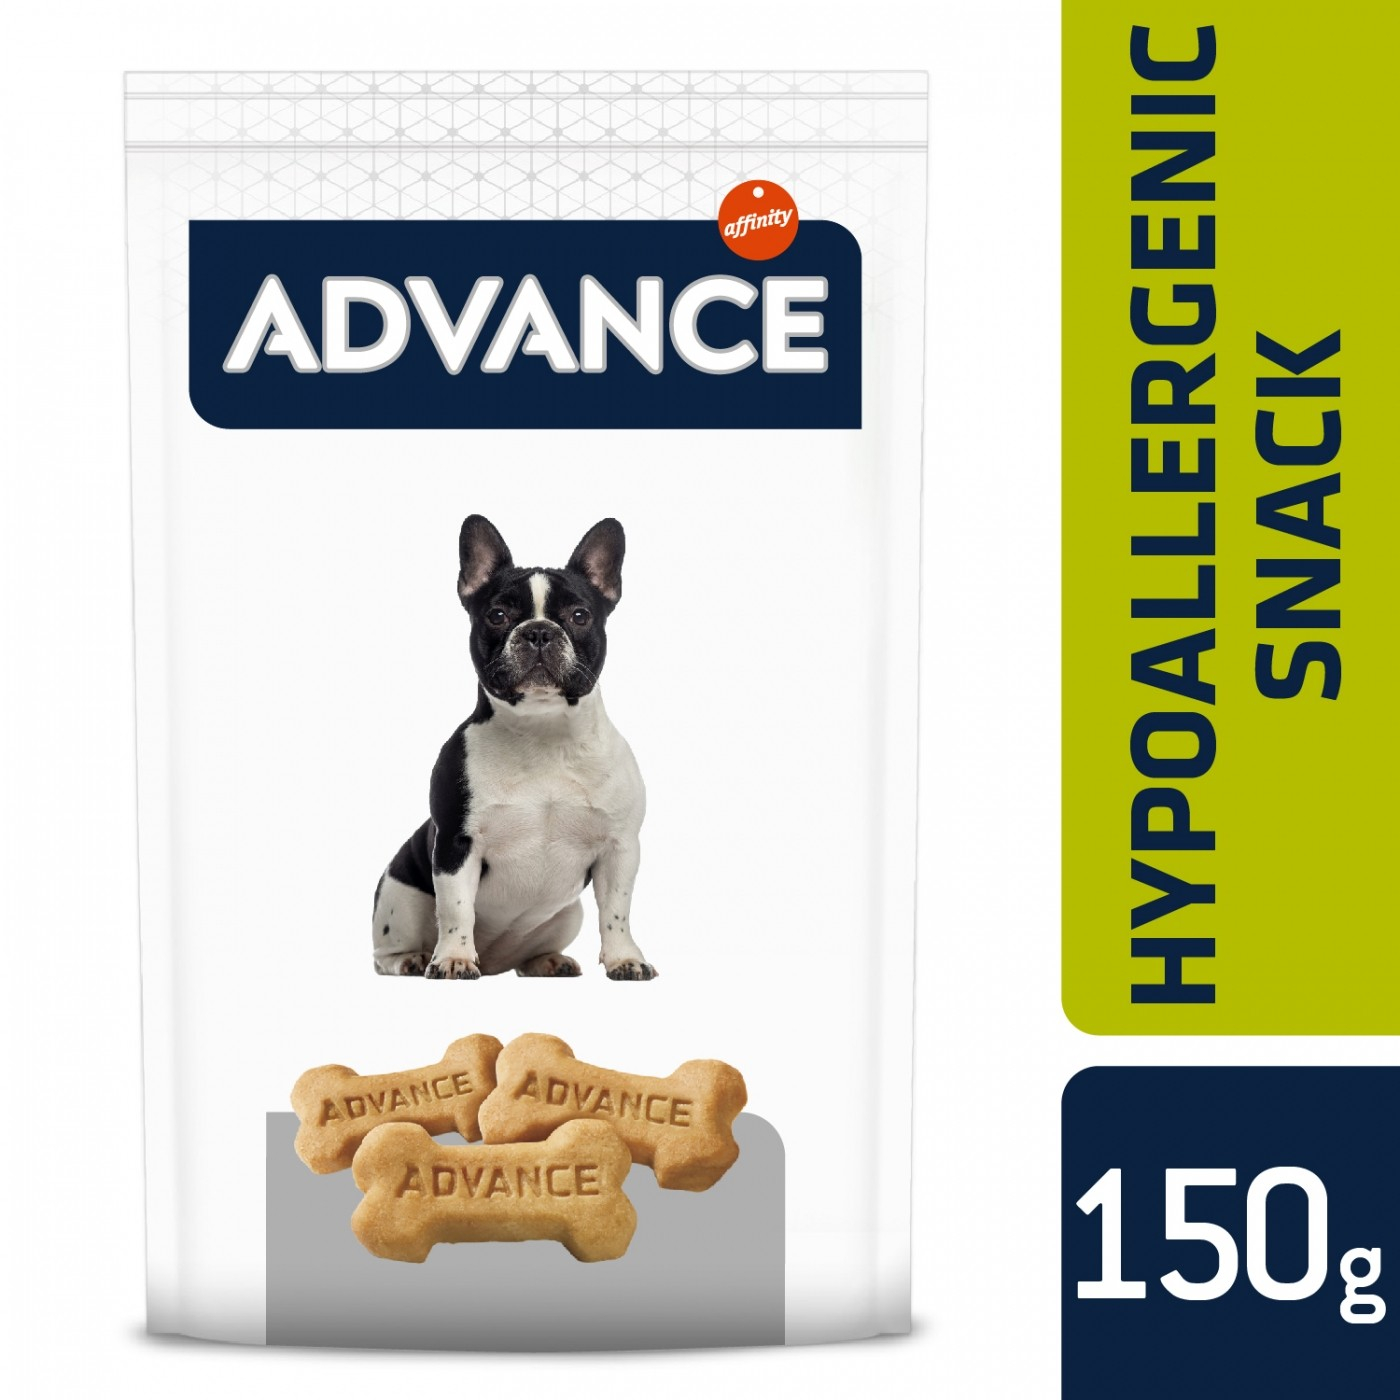 ADVANCE Snack Hypoallergeen voor honden